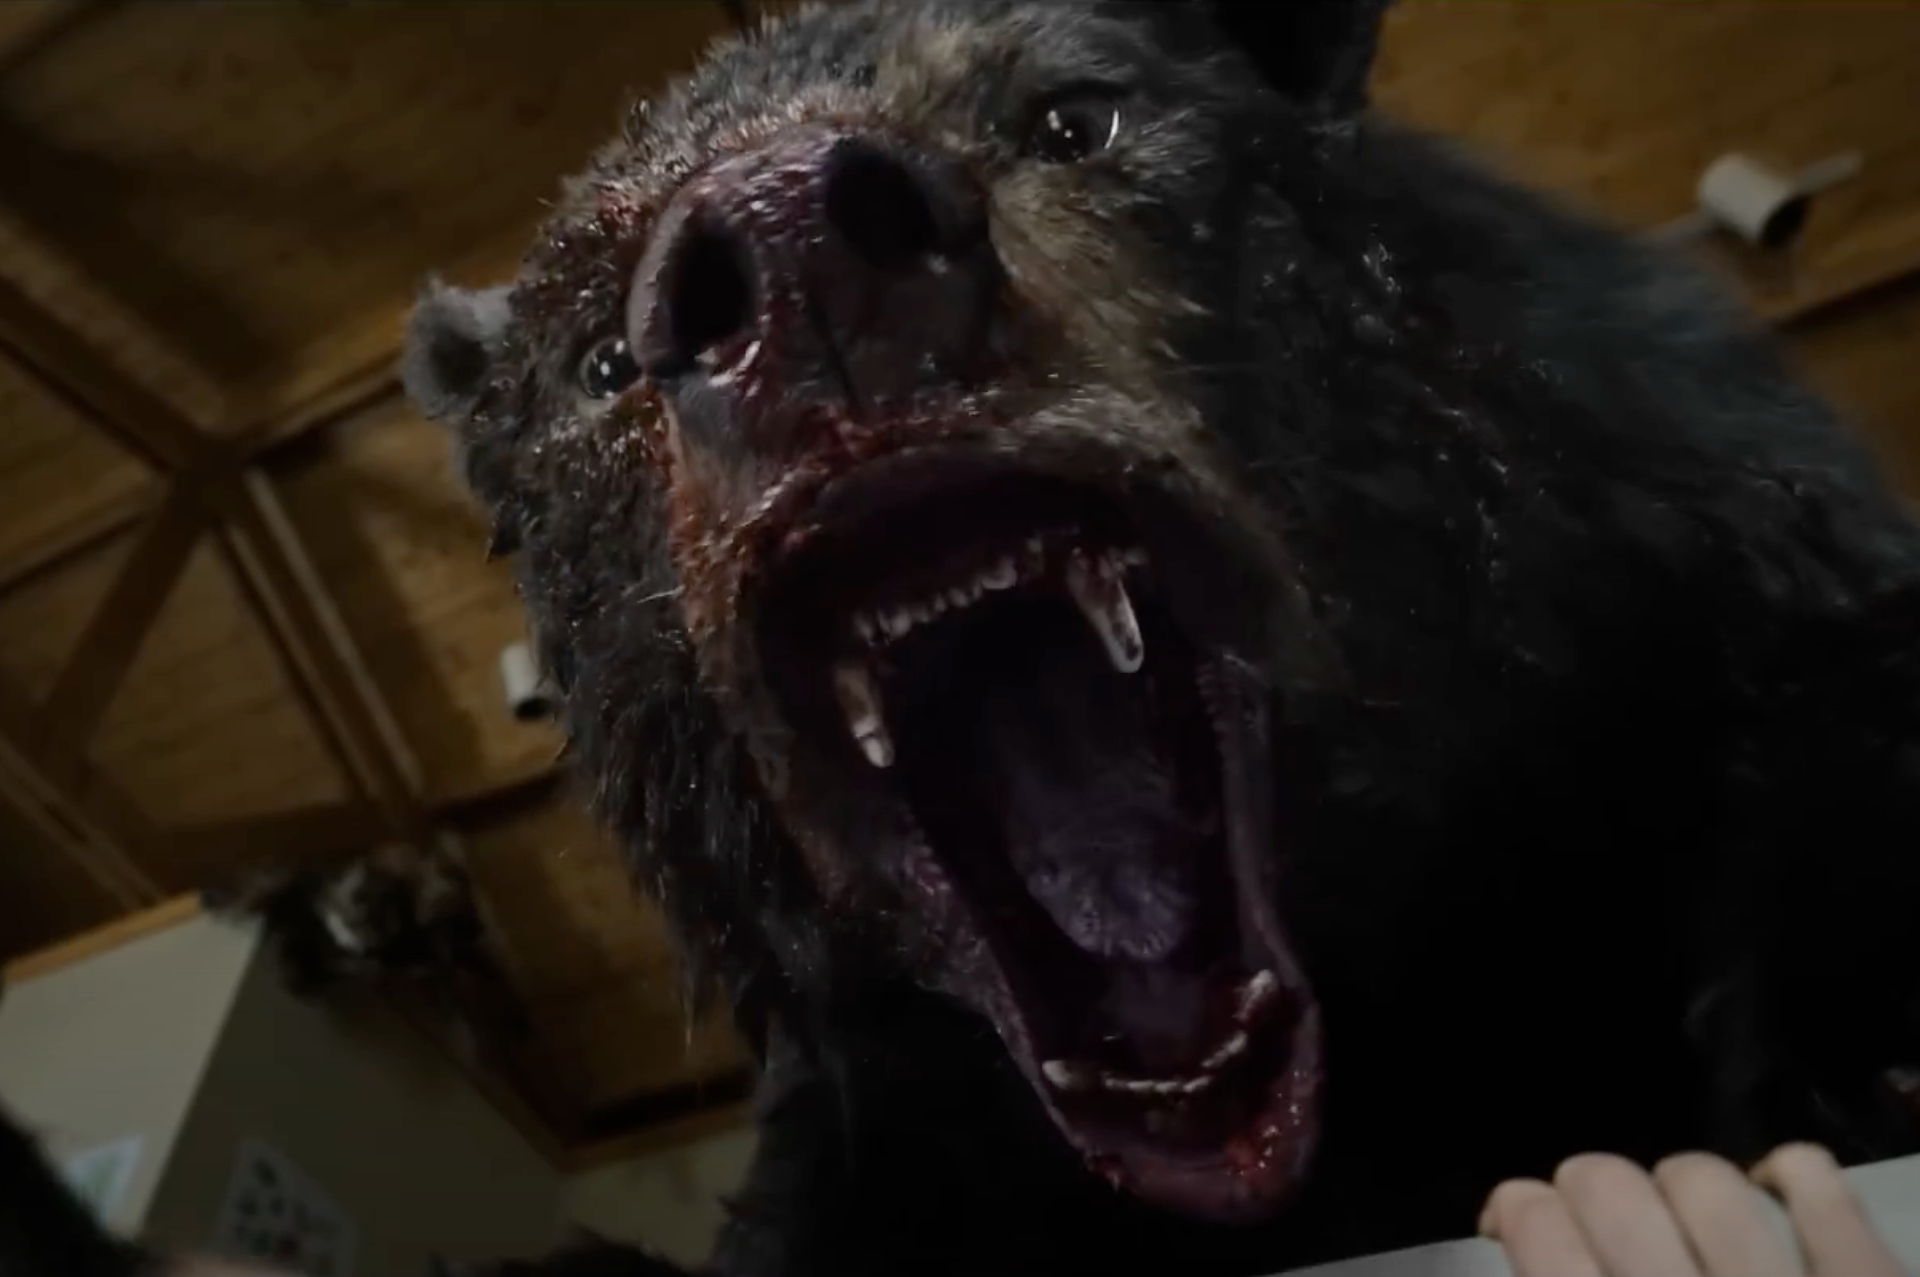 Cocaine Bear sorprende en Rotten Tomatoes tras su estreno